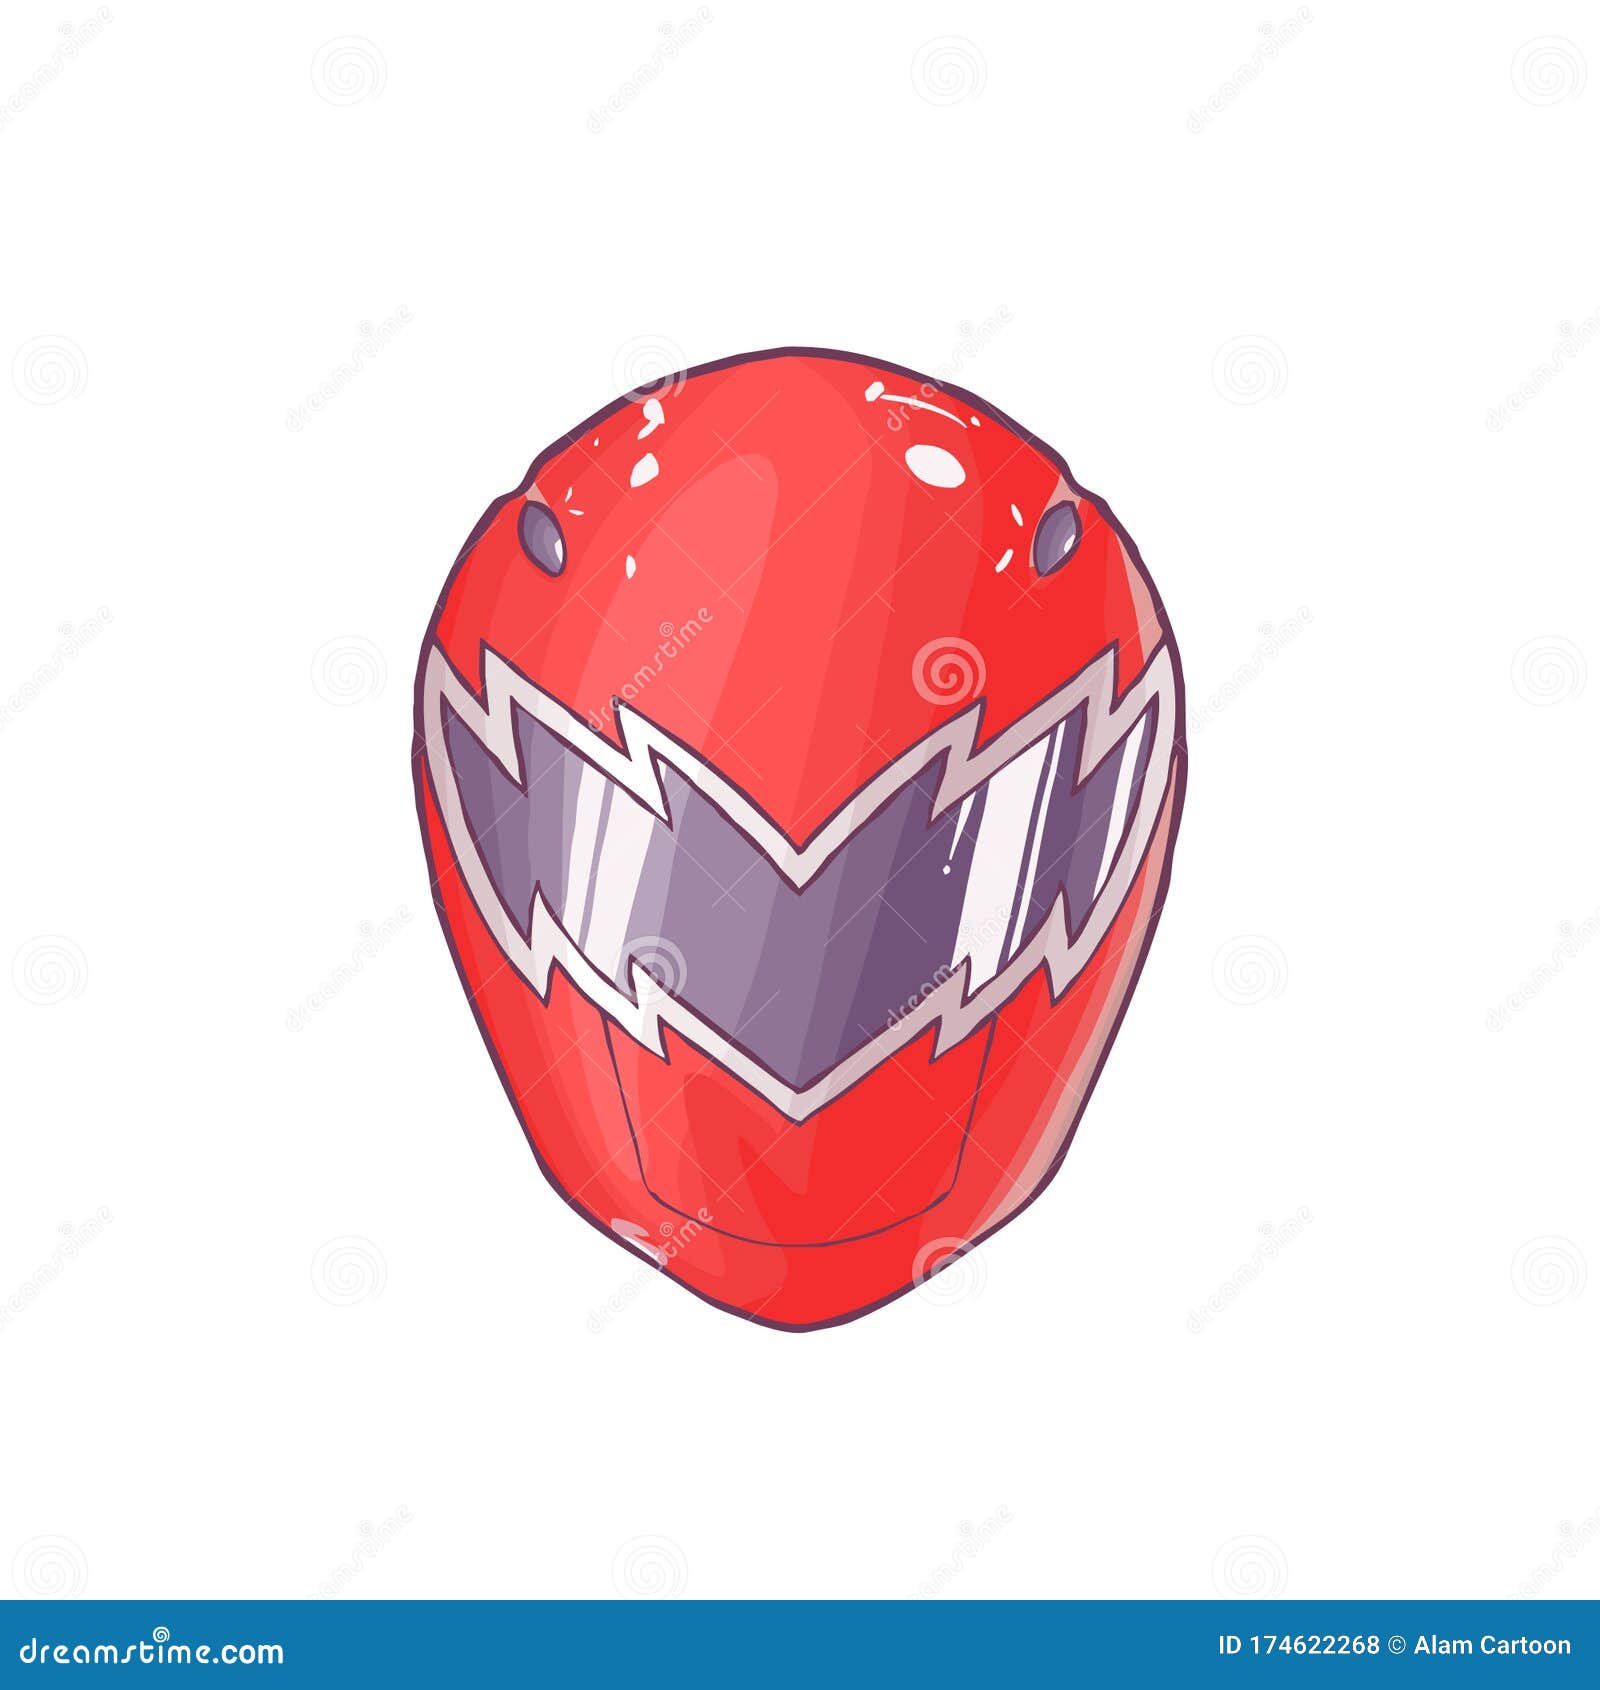 Power Ranger Red Helmet Artwork Stock Vector - Illustration of painted,  helmet: 174622268